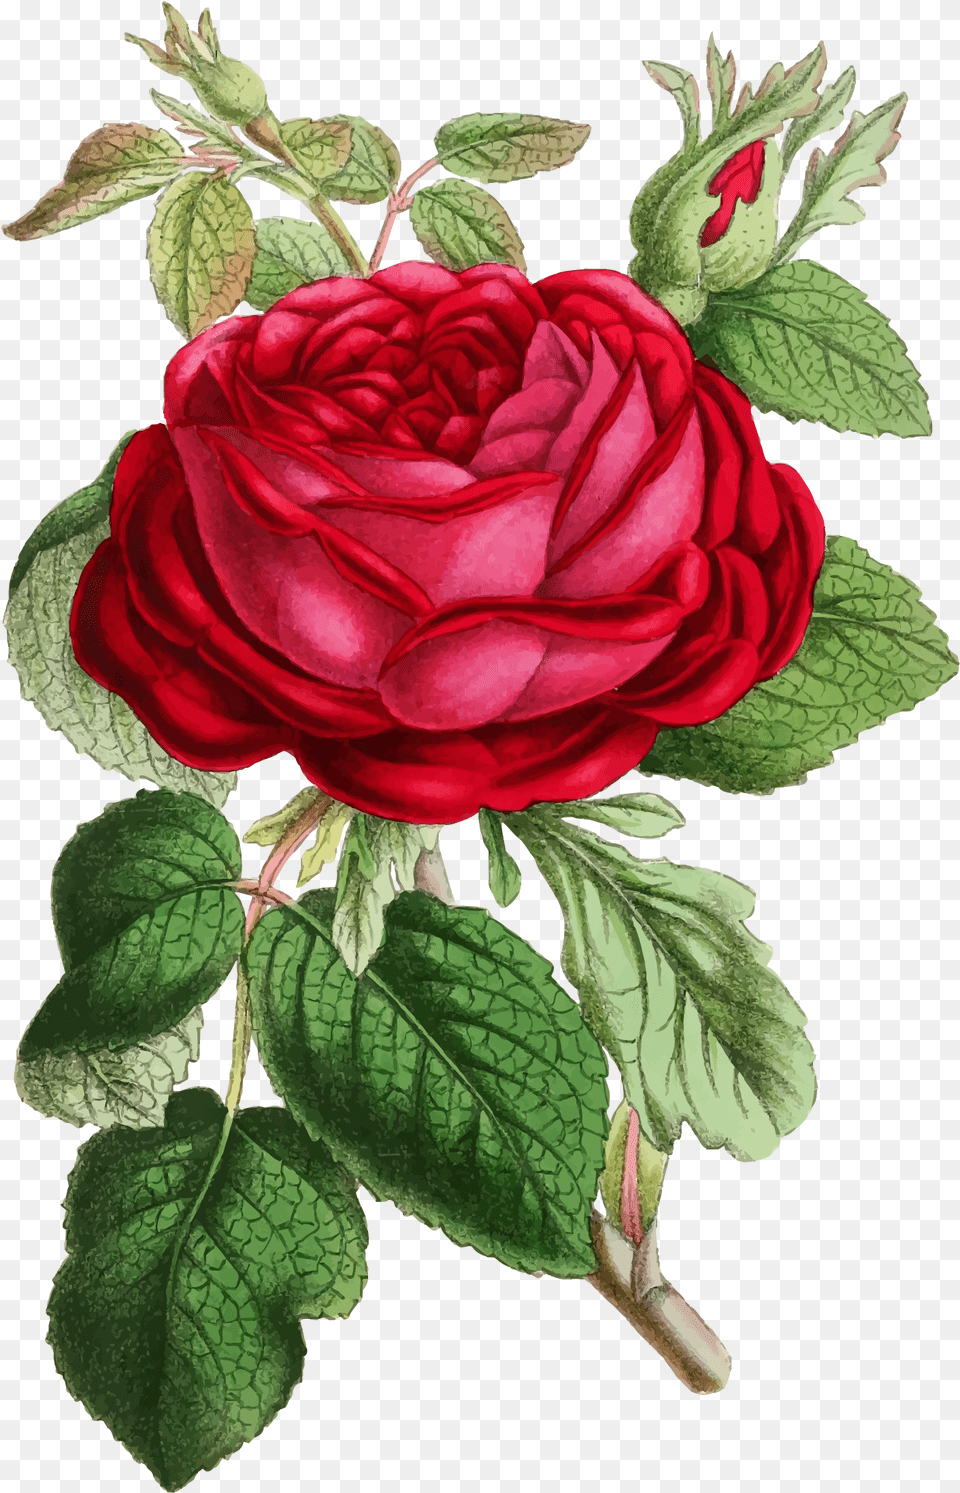 Clipart Roses Illustration Rose Illustration Vintage, Flower, Plant, Leaf, Petal Png Image